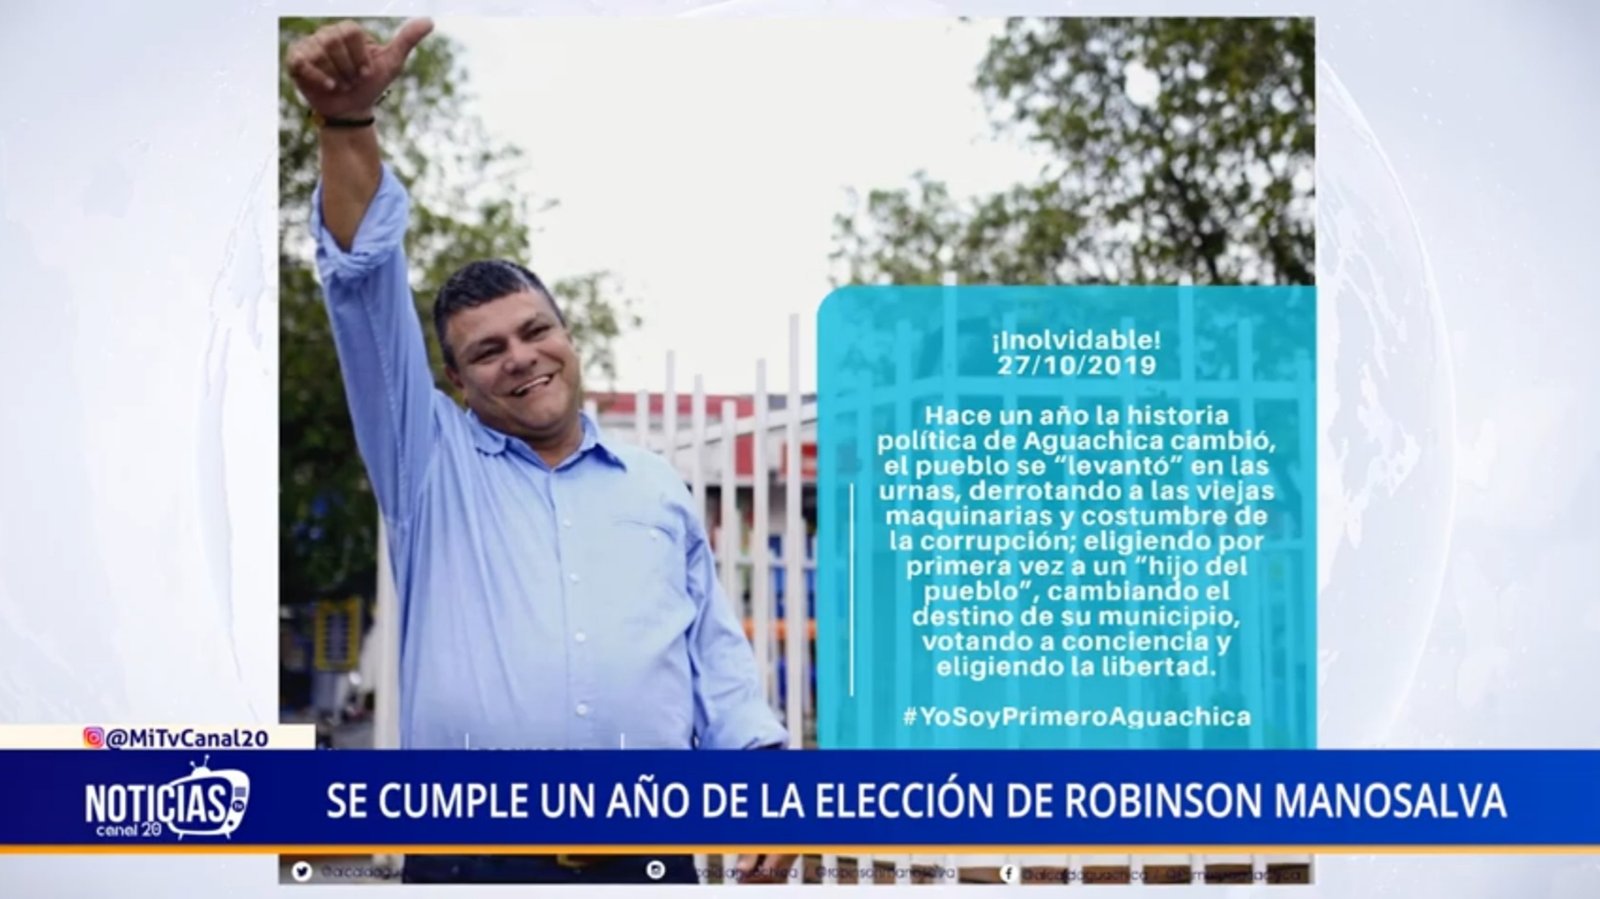 SE CUMPLE UN AÑO DE LA ELECCIÓN DE ROBINSON MANOSALVA